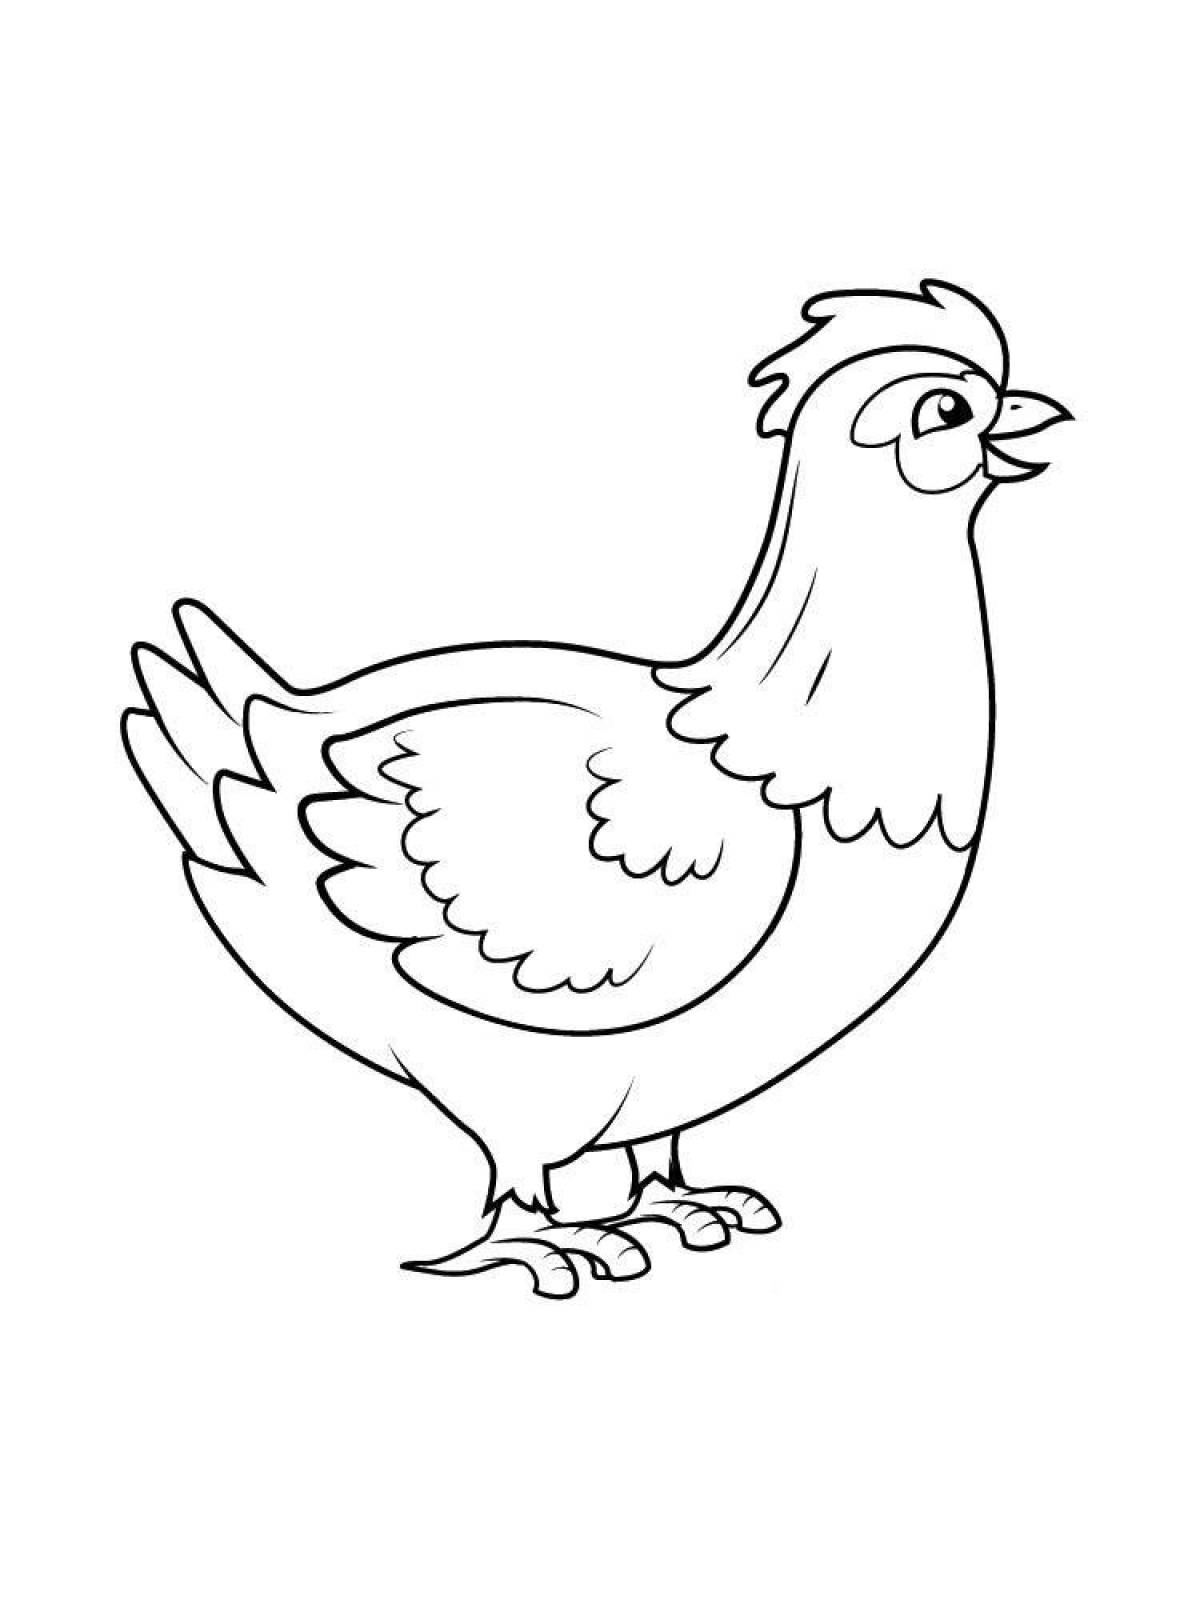 Увлекательная раскраска цыпленка для детей